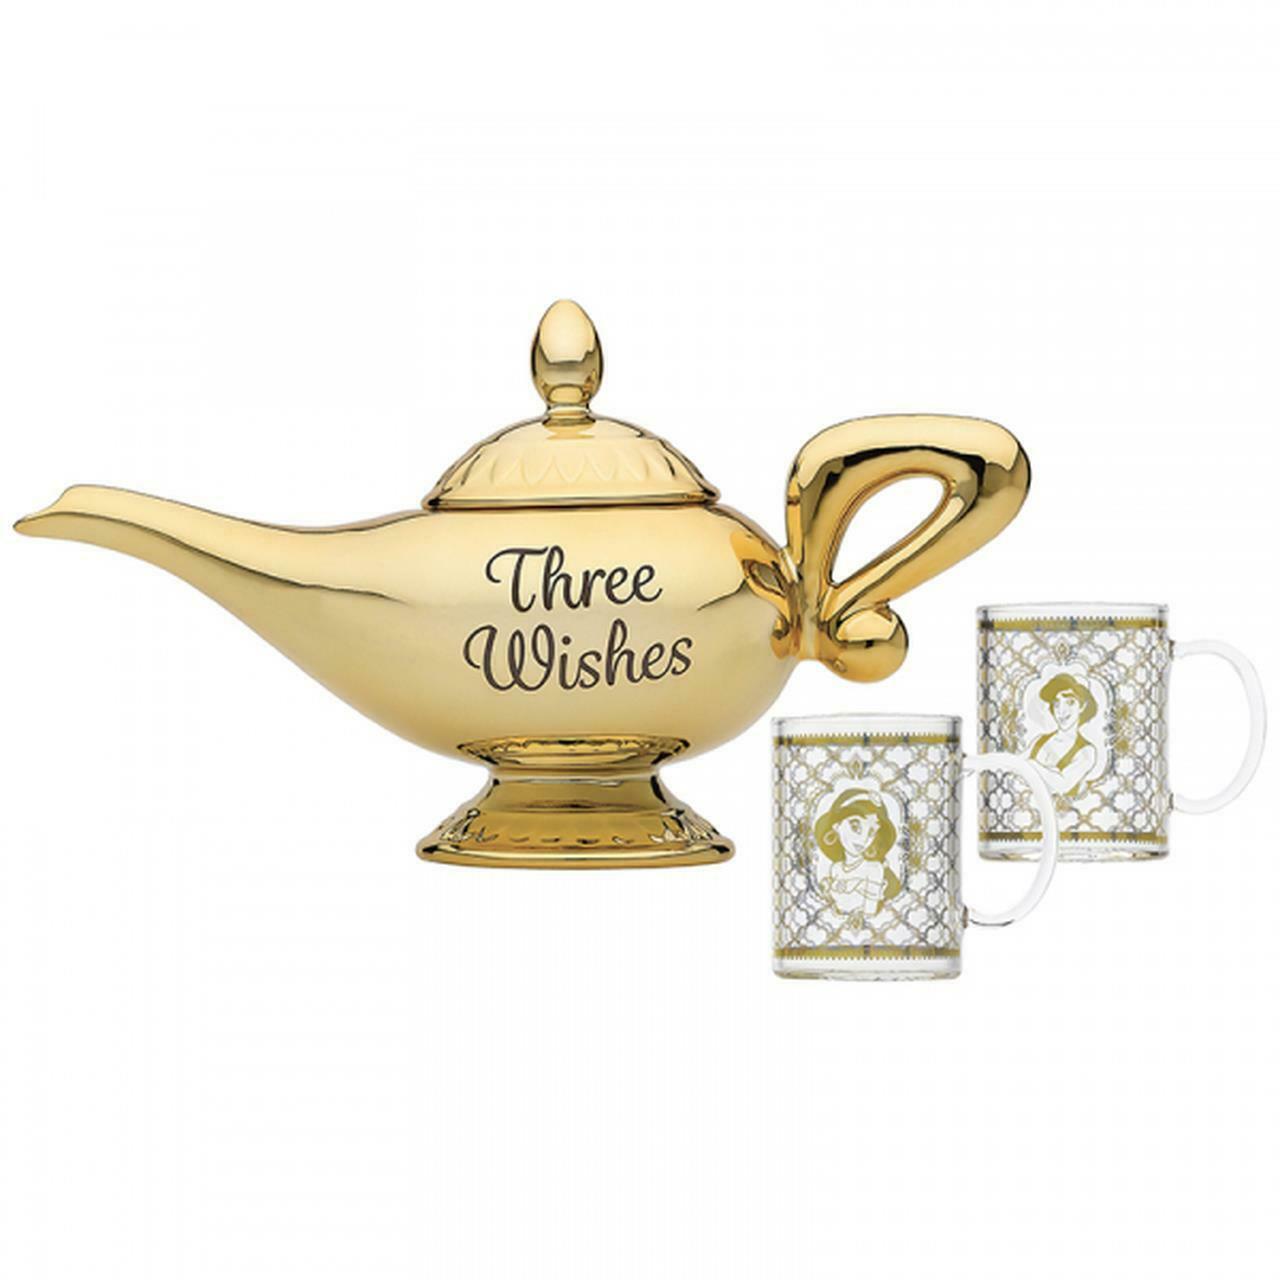 Serviciu de ceai de jucarie - Lampa lui Aladdin | Disney